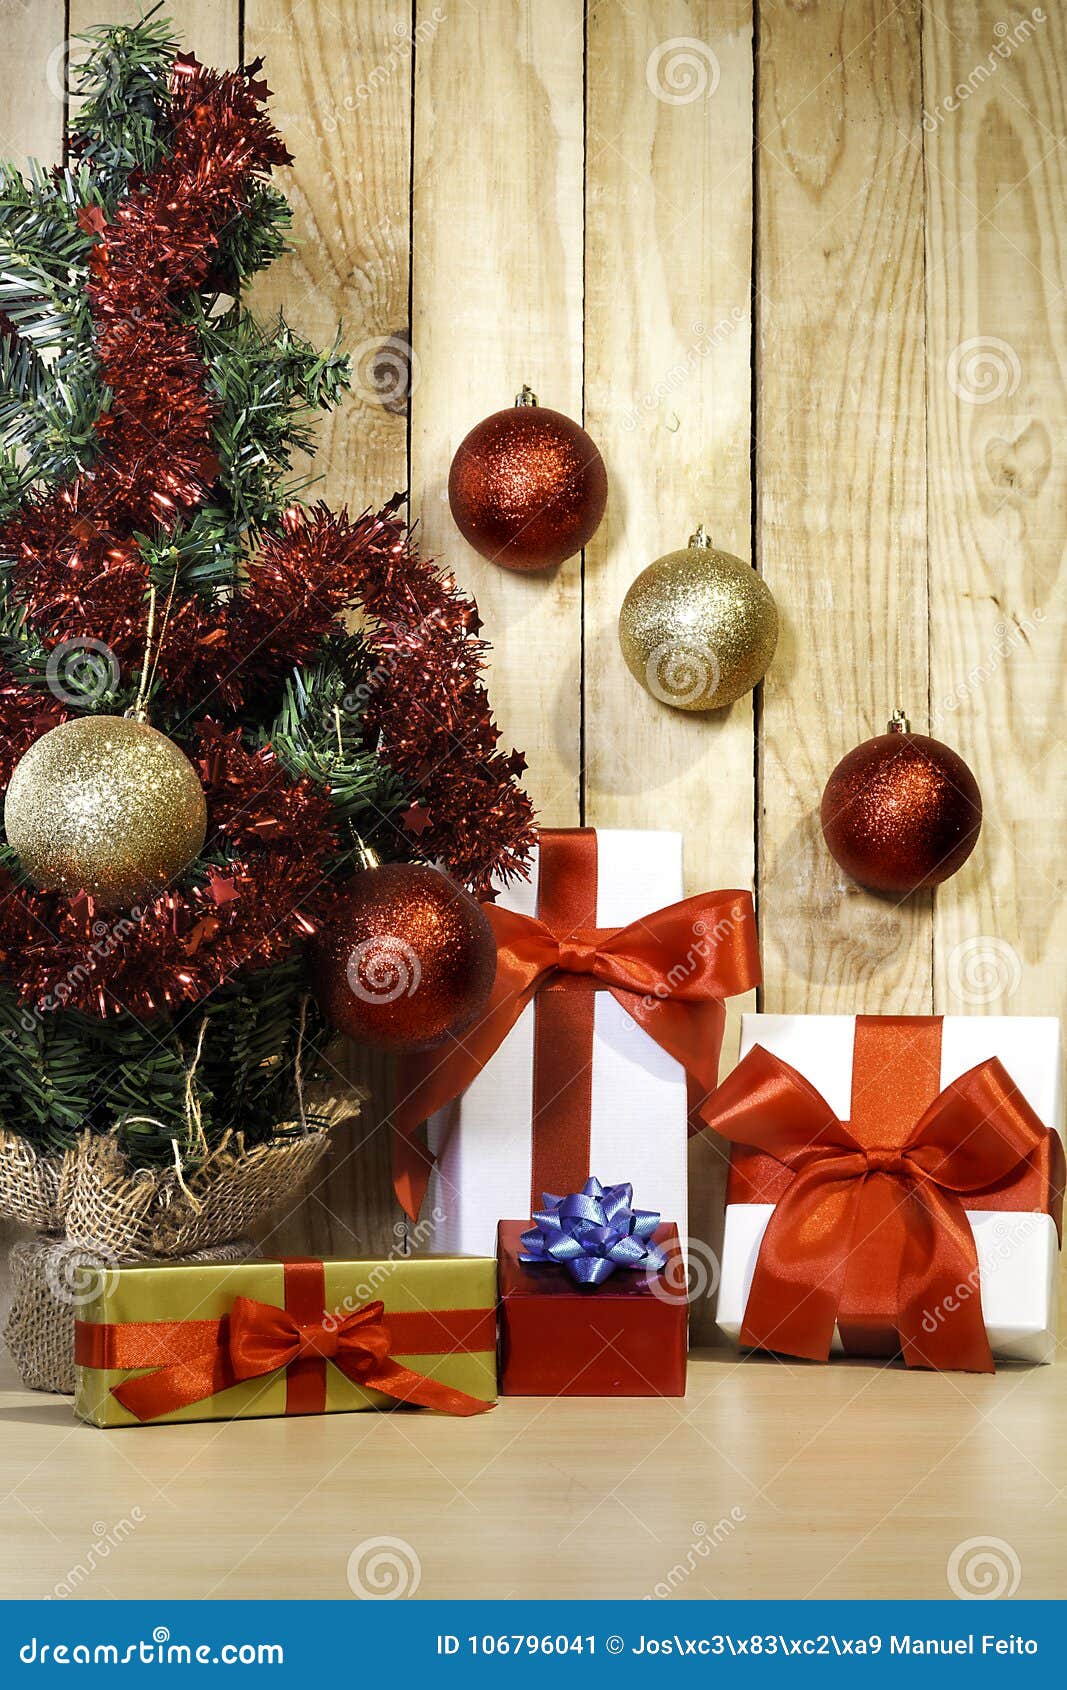 Christmas Gifts and Christmas Tree I Stock Image - Image of wood ...